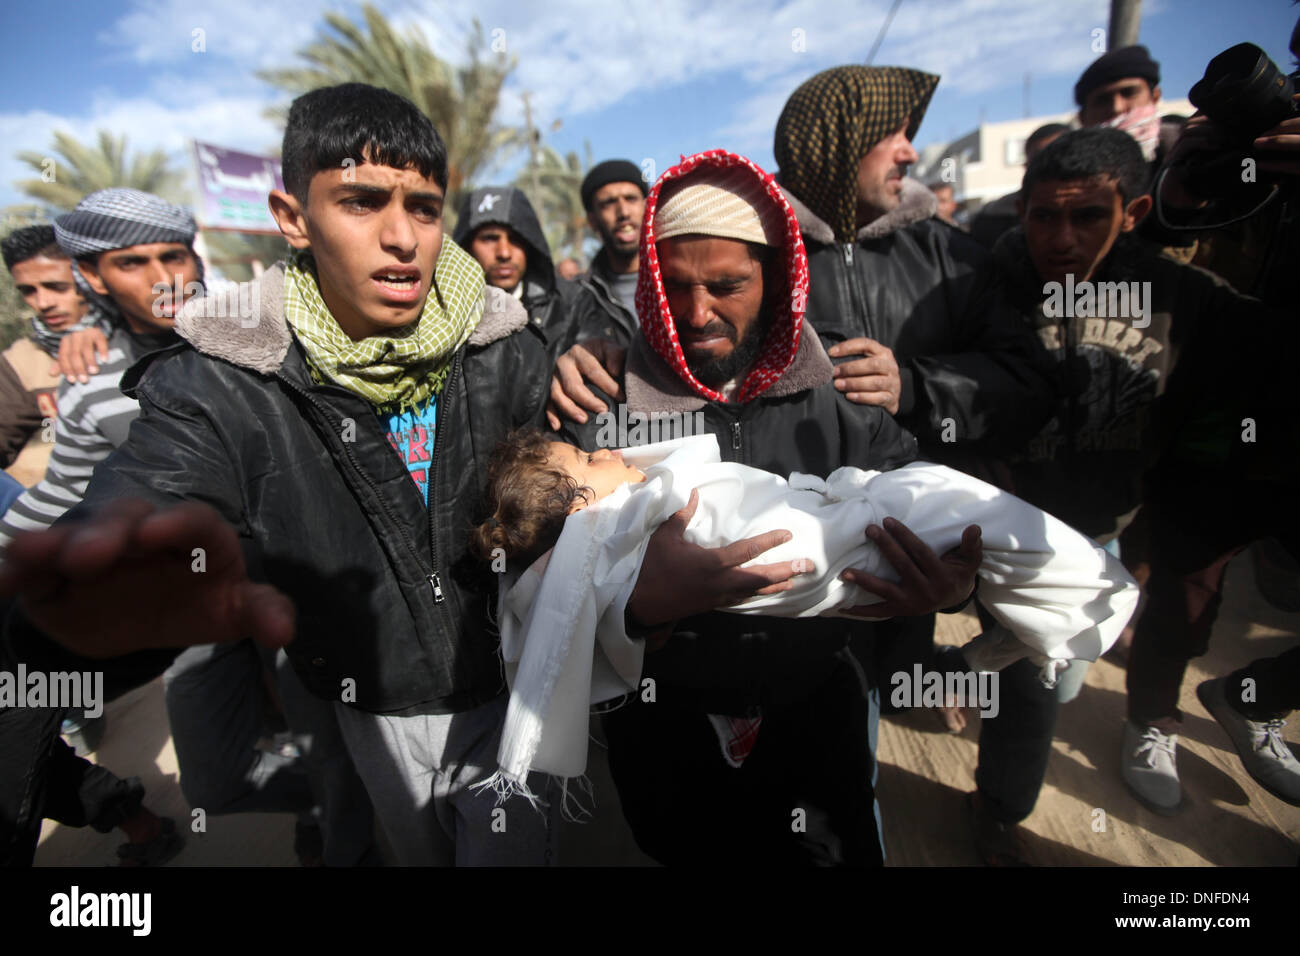 La striscia di Gaza, Territori palestinesi. 25 Dic, 2013. Un mourner porta il corpo di una ragazza palestinese all'età di tre anni alo Bhairi, che i medici hanno detto è stato ucciso da schegge da un attacco aereo israeliano, in un cimitero nella zona centrale della striscia di Gaza il 25 dicembre 2013. Un cecchino ha ucciso un civile israeliana sulla frontiera Gaza martedì e Israele ha risposto con attacchi aerei su due campi di addestramento di Hamas, che ospedale funzionari detti ucciso una ragazza palestinese vicino a uno degli obiettivi.Foto: Majdi Fathi/NurPhoto Credito: Majdi Fathi/NurPhoto/ZUMAPRESS.com/Alamy Live News Foto Stock